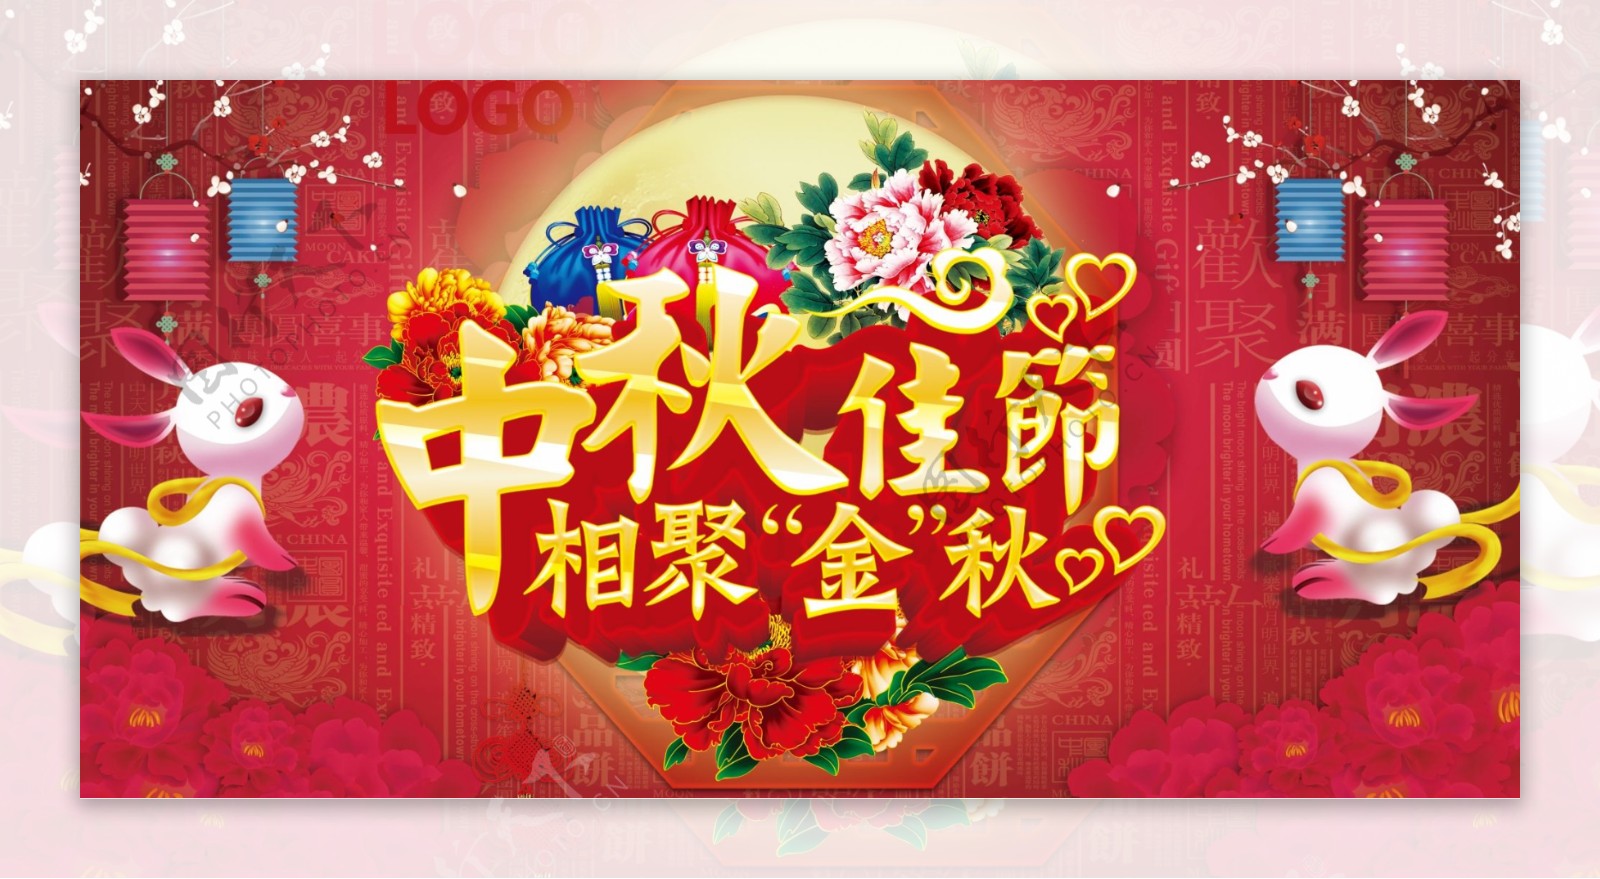 红色中国传统风格中秋联欢晚会舞台背景展板